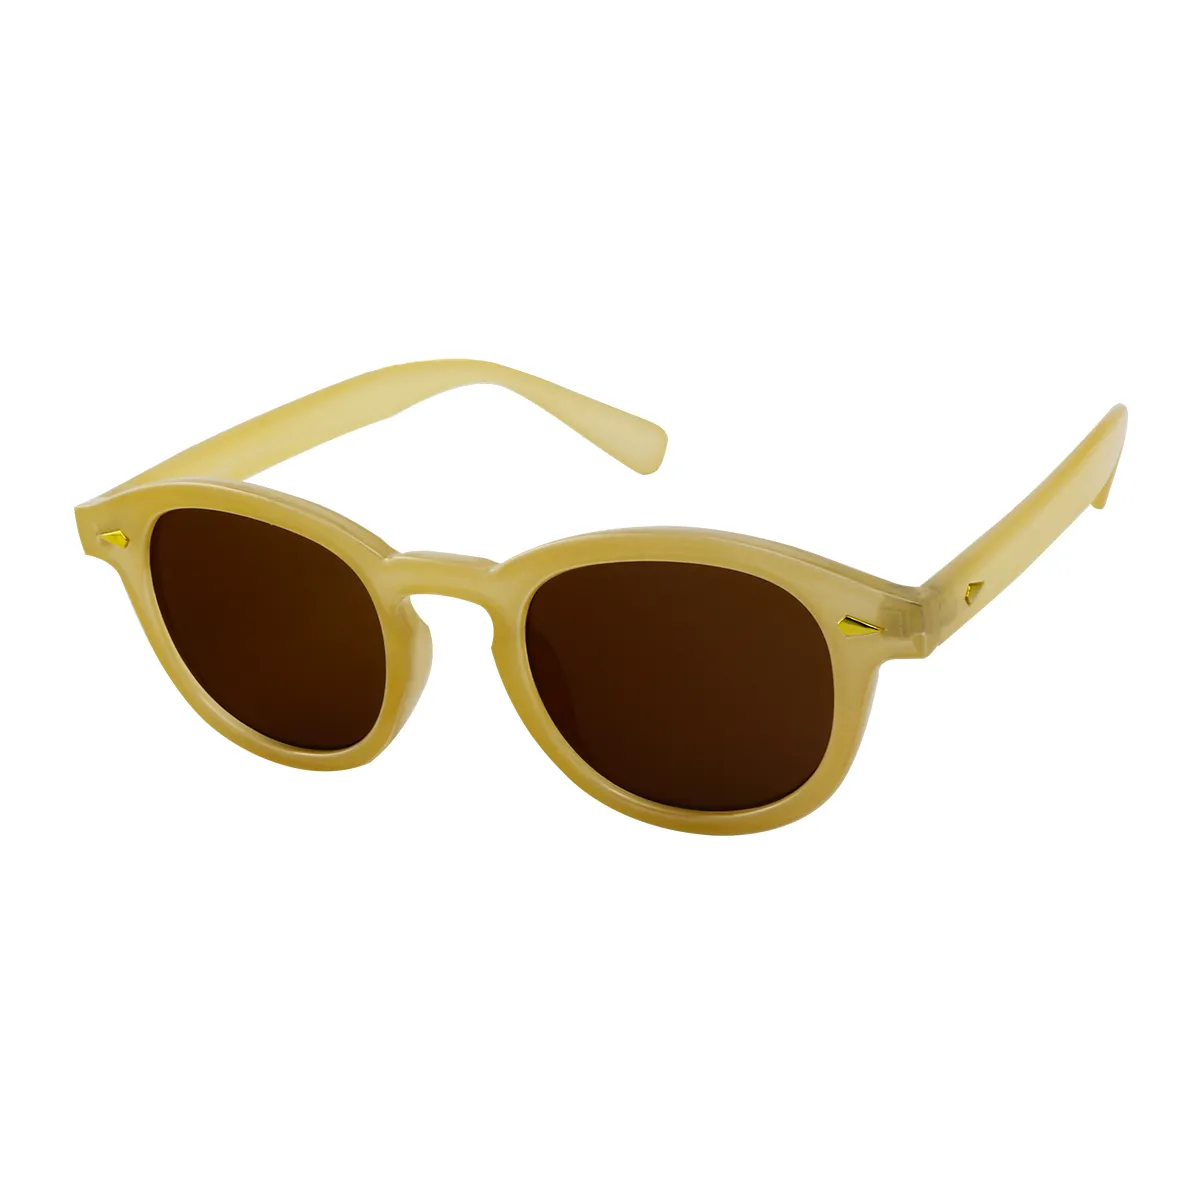 Neutral -  Off-white Sunglasses for Men & Women